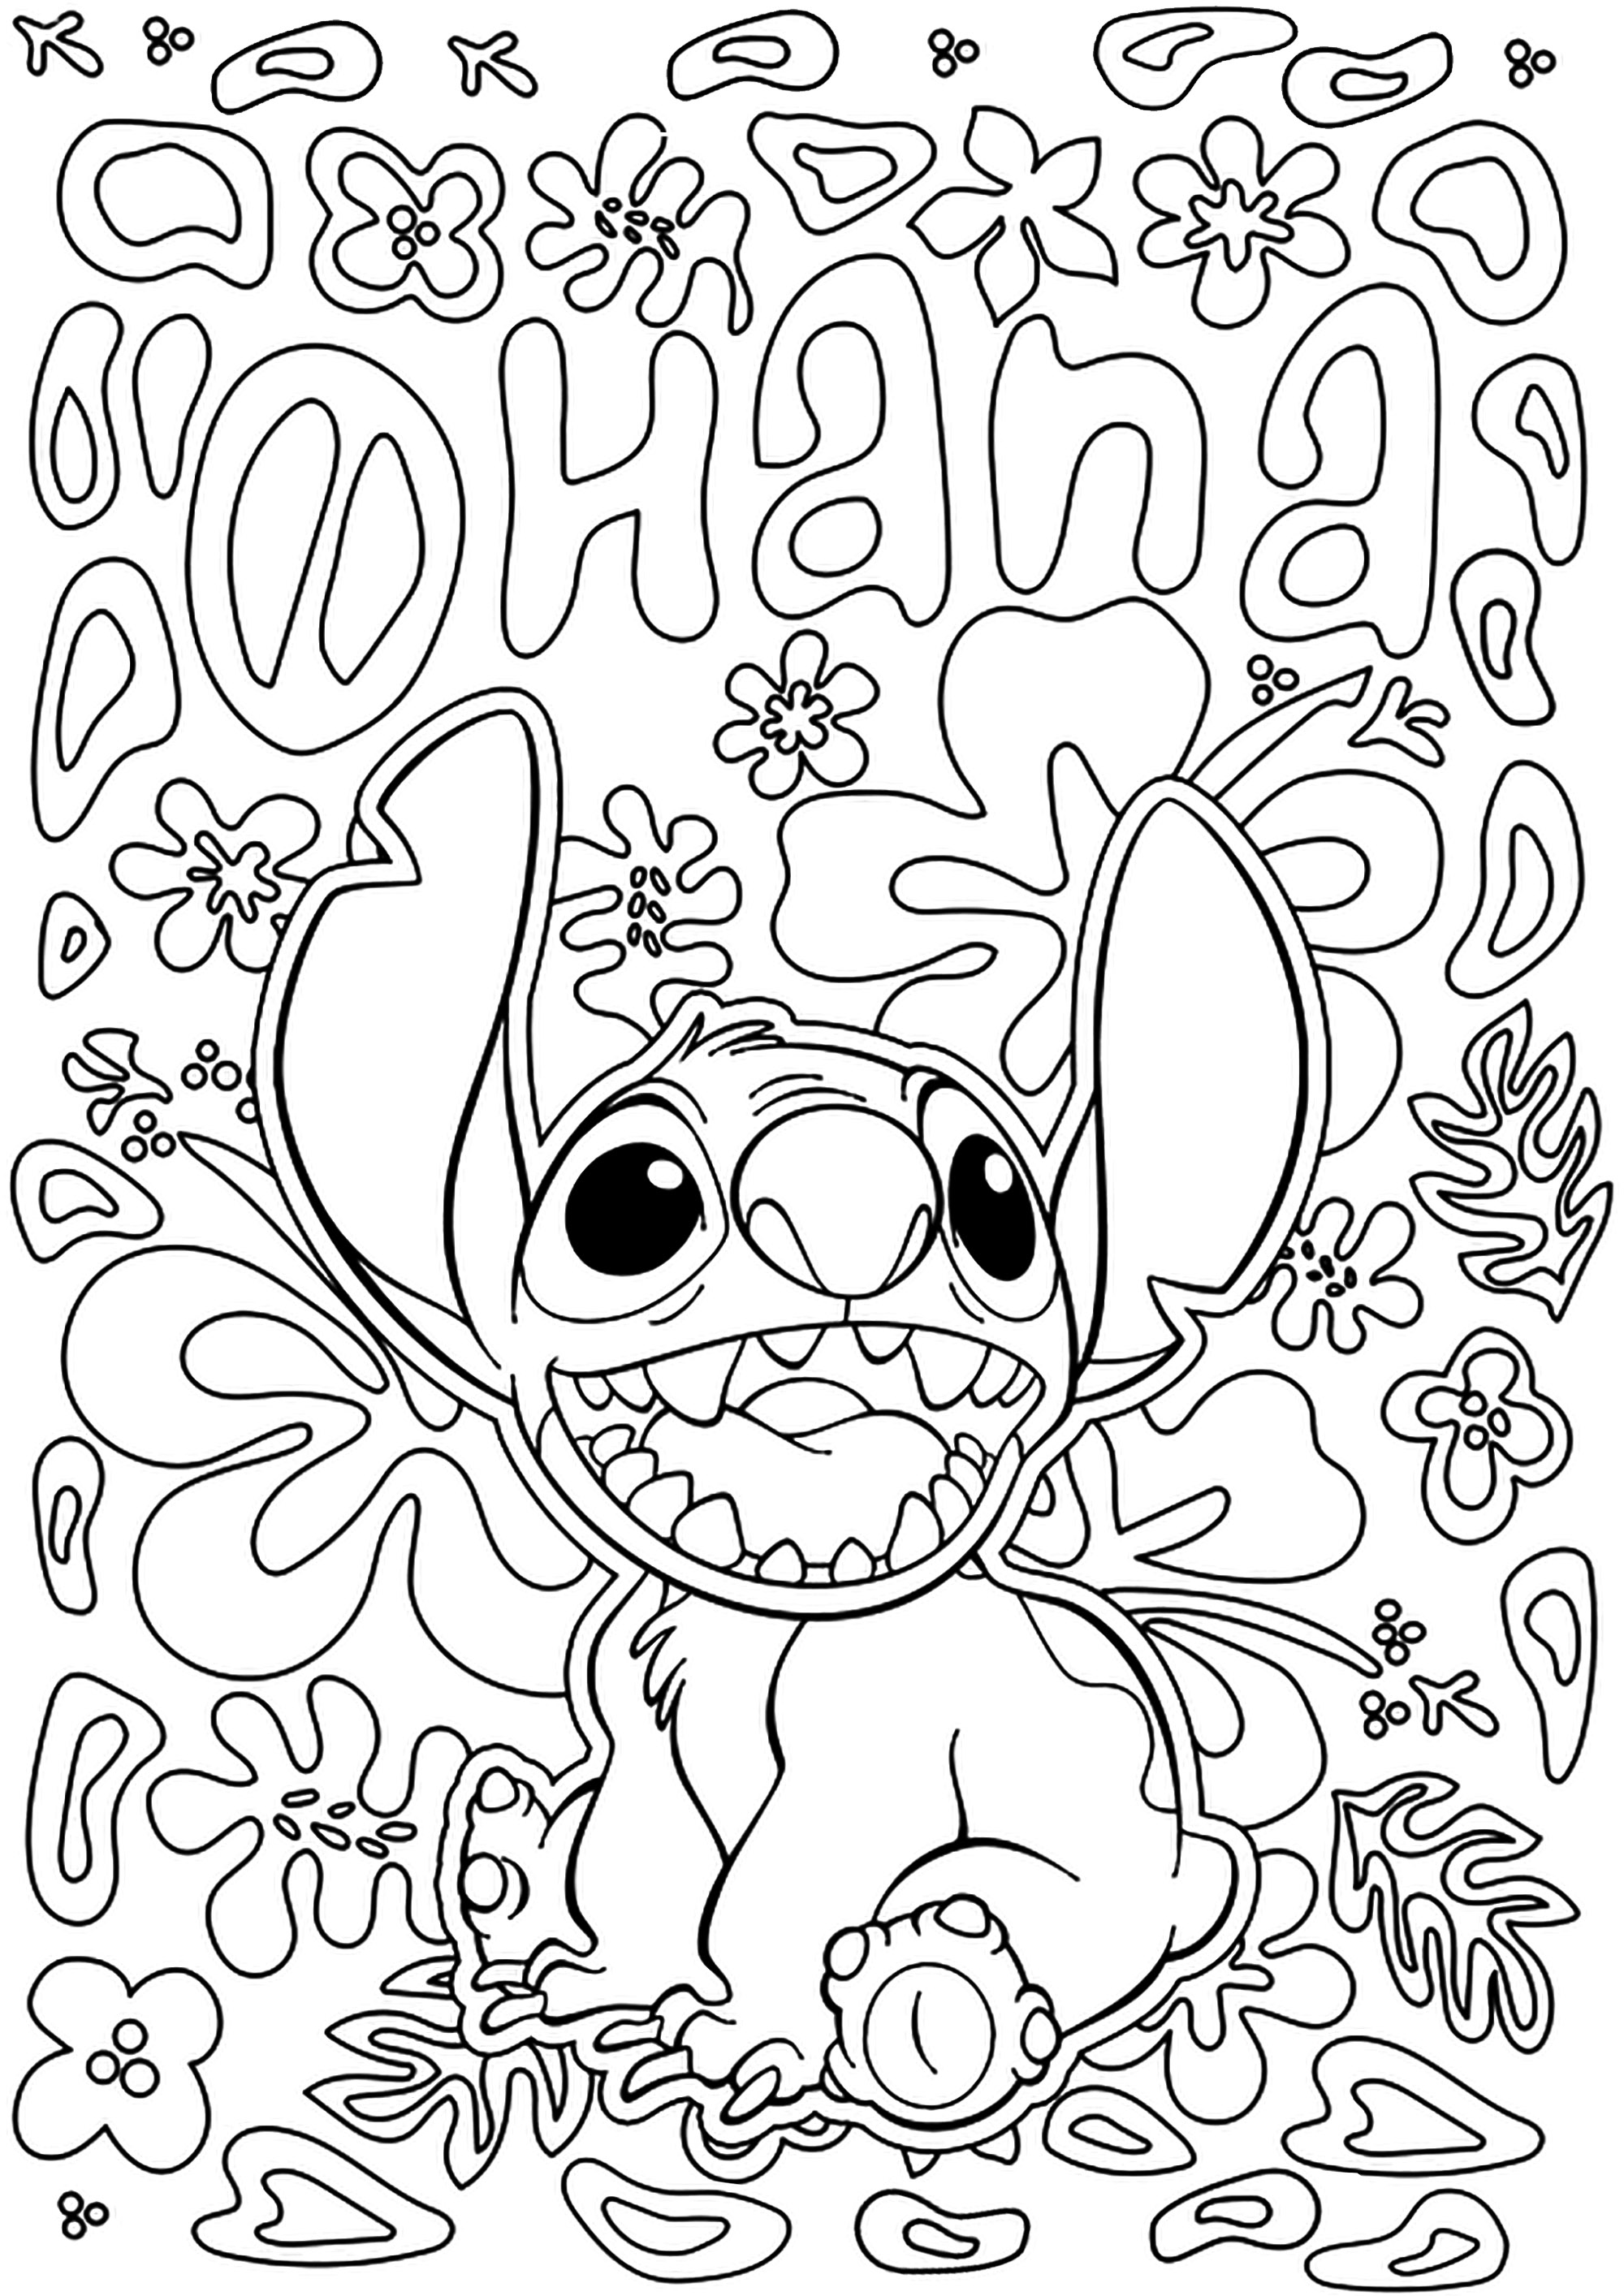 Desenho de Stitch para colorir com o texto 'Ohana' (do filme de animação da Disney Lilo e Stitch). Ohana é um termo havaiano que se traduz como 'família', seja por adoção, sangue ou intenção.